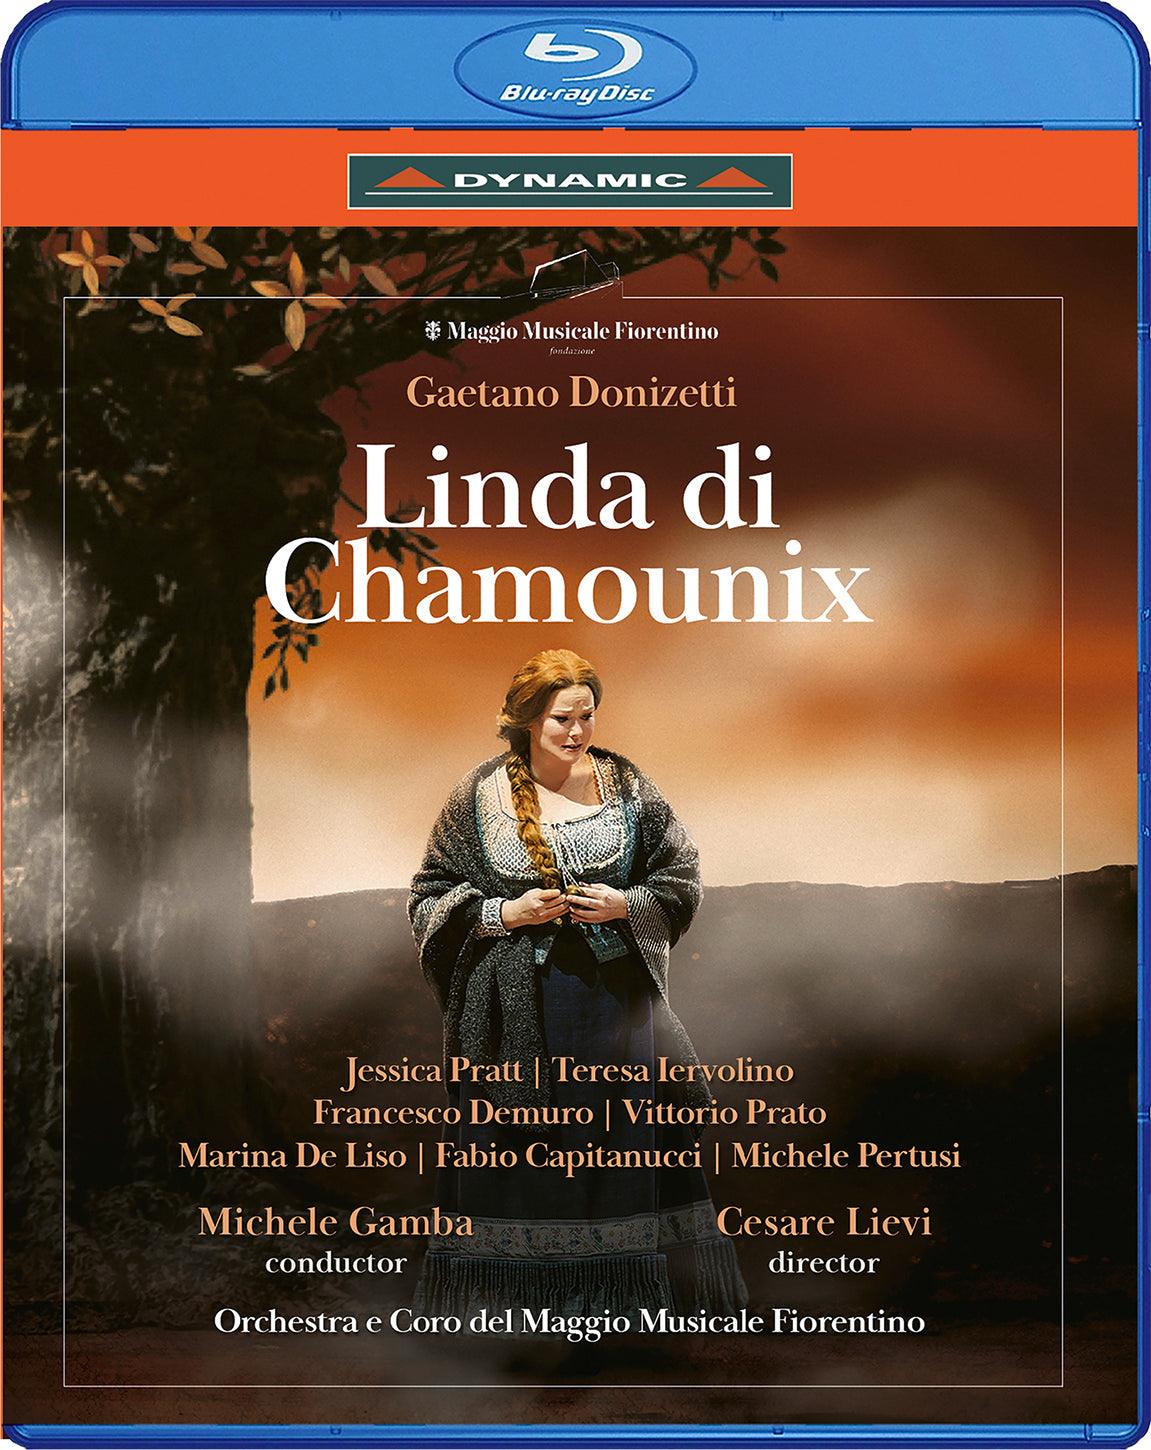 Donizetti: Linda di Chamounix / Pratt, Demuro, Gamba, Orchestra e Coro del Maggio Musicale Fiorentino - ArkivMusic